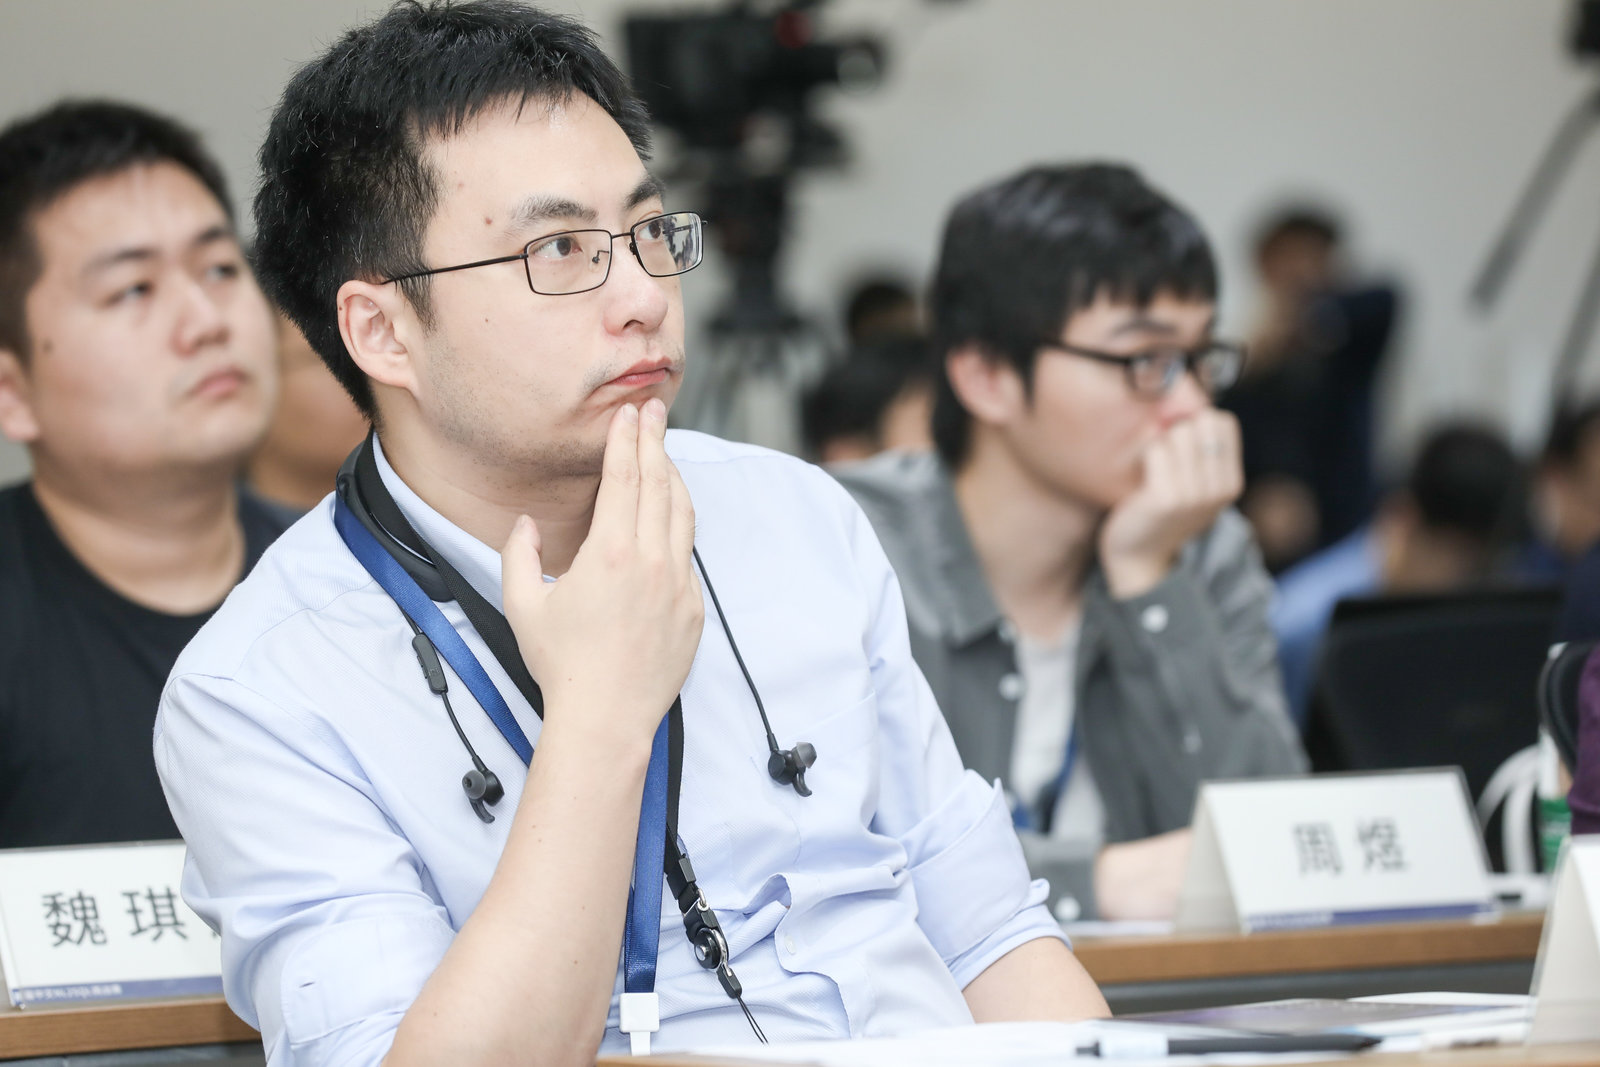 南京大学人工智能学院教授俞扬：从应用出发多角度设计，可得更优算法模型